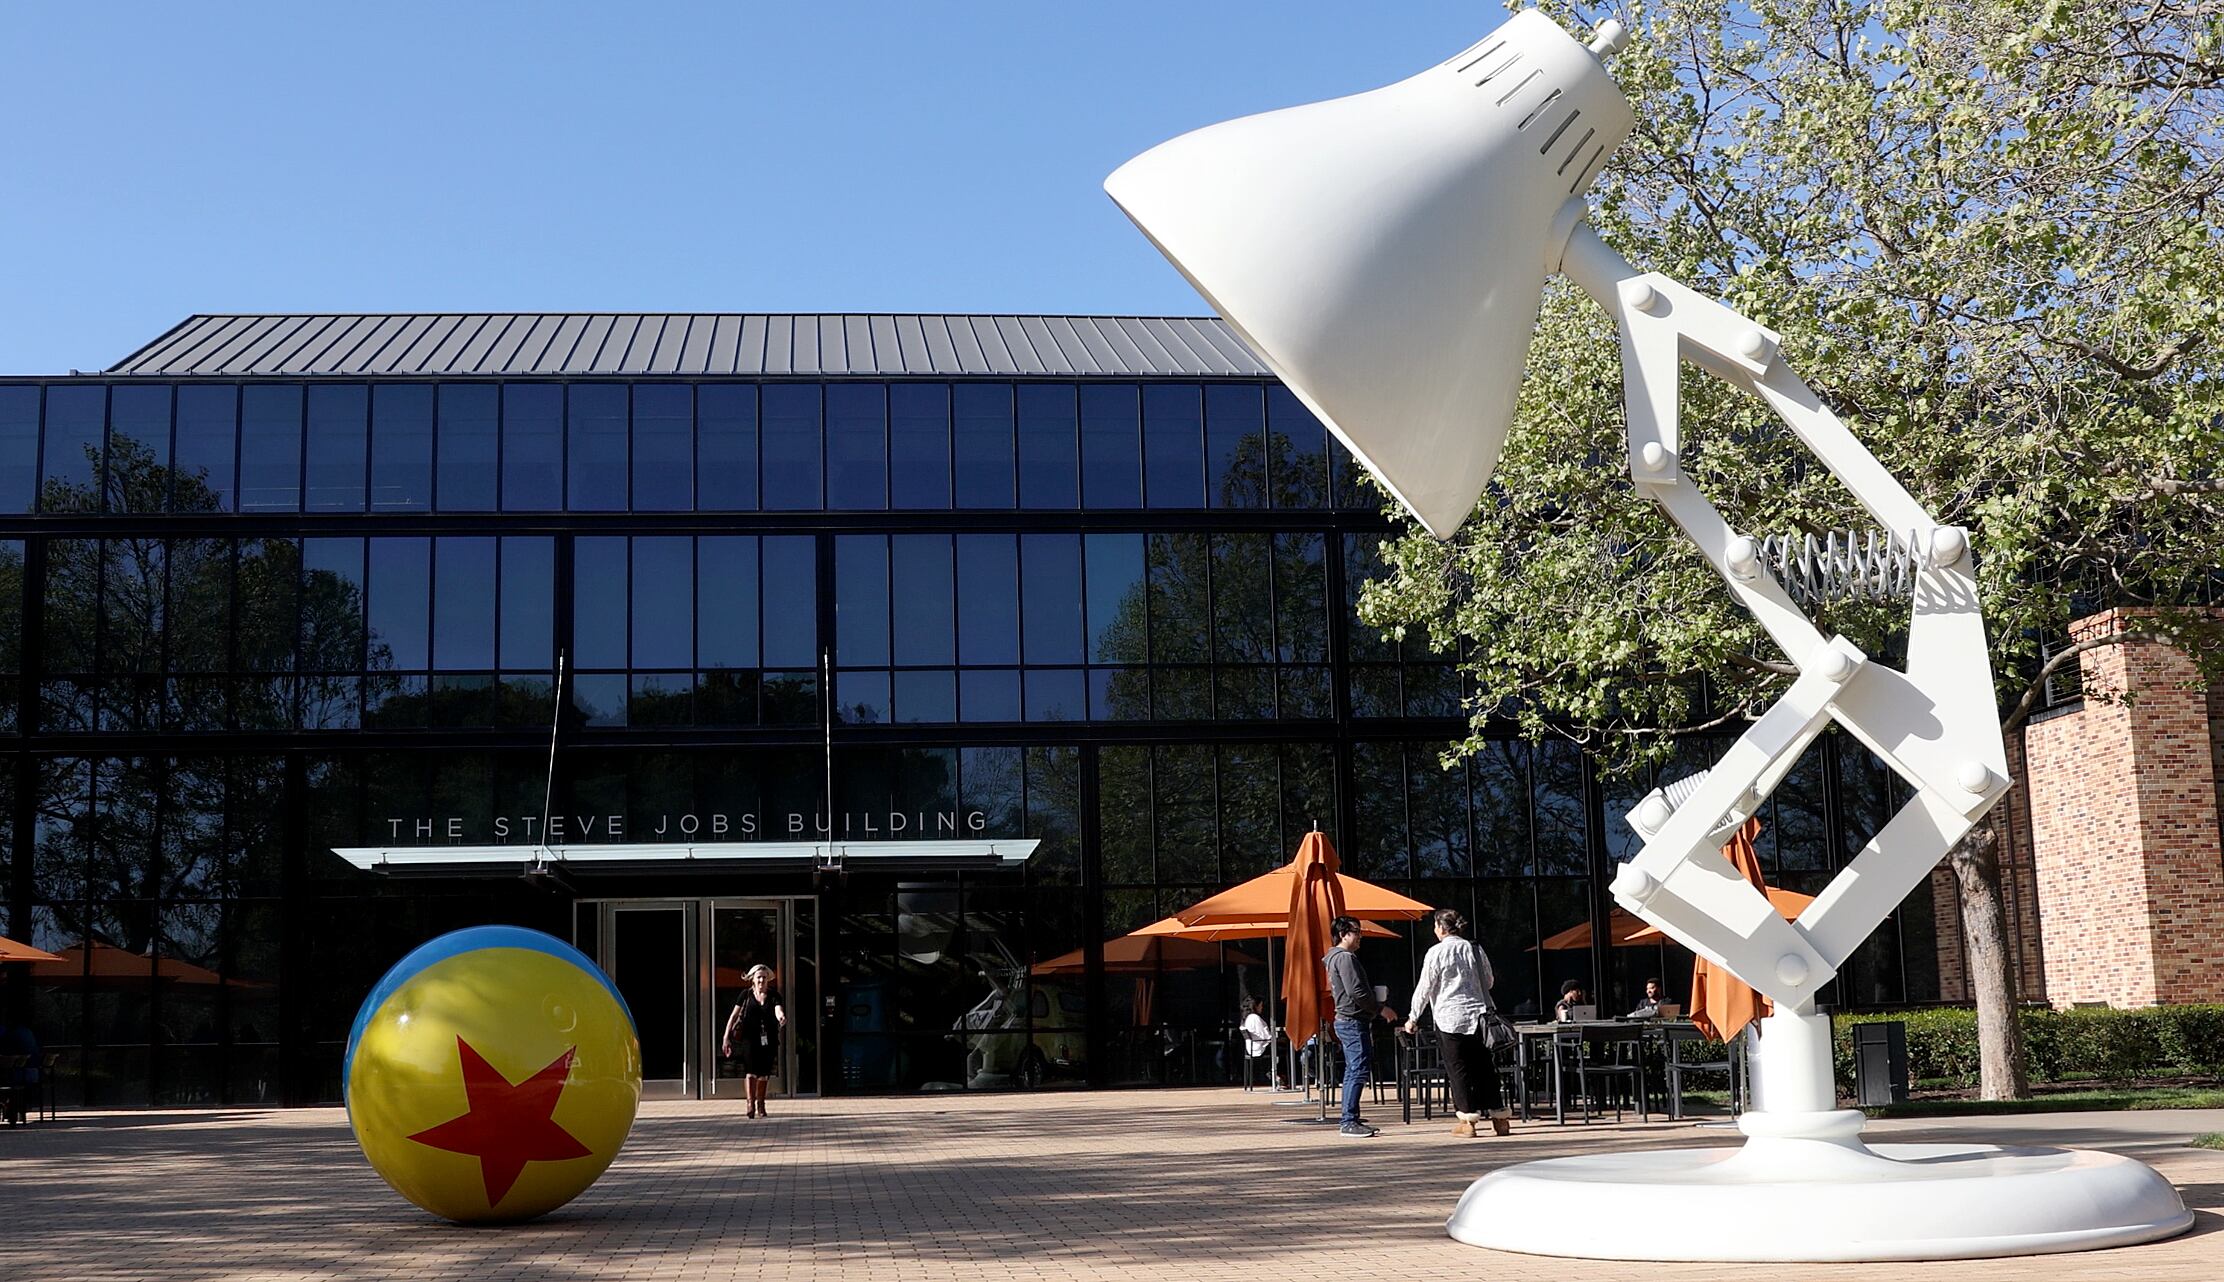 La entrada de los estudios Pixar en Emeryville, California, con la lámpara Luxo y la pelota de 'Toy Story'.